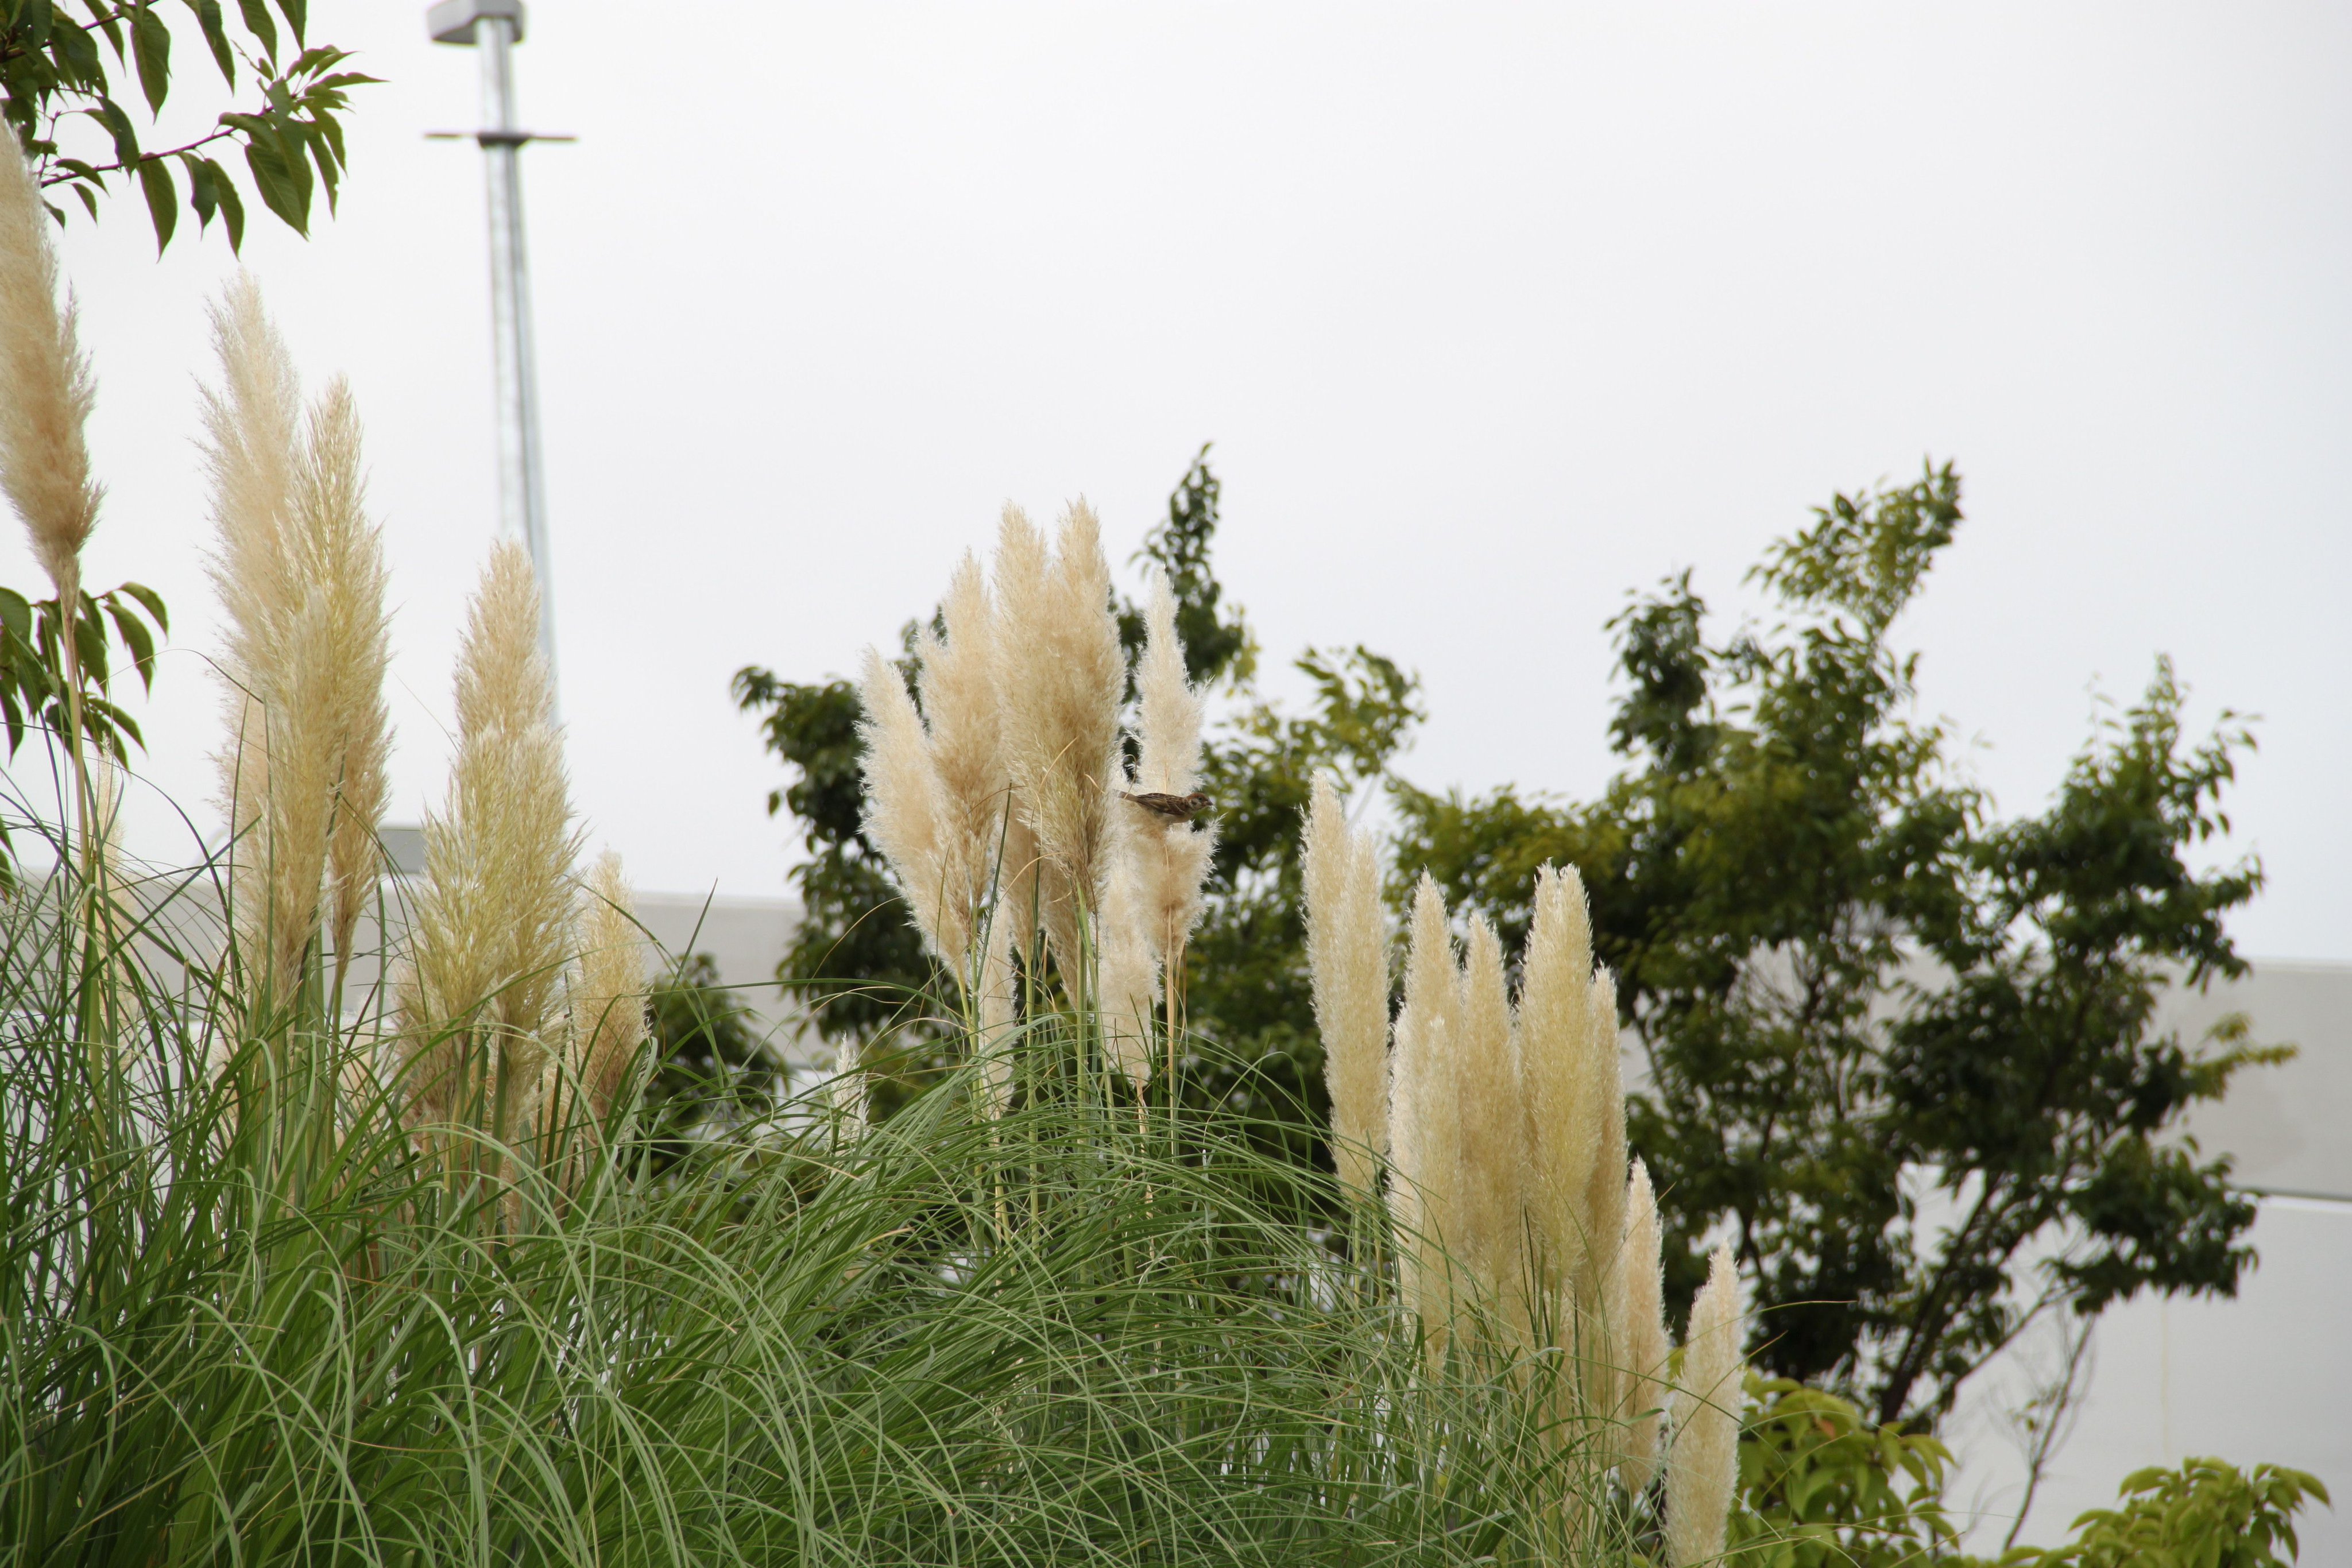 江東区 季節の花 パンパスグラス 豊洲六丁目公園では 秋の七草の尾花 ススキ の仲間 パンパスグラス が大きな穂をつけ 秋の訪れを知らせています もうじき涼しい風も吹きはじめます 季節を感じに訪れてみてはいかがでしょうか 江東区 みどり